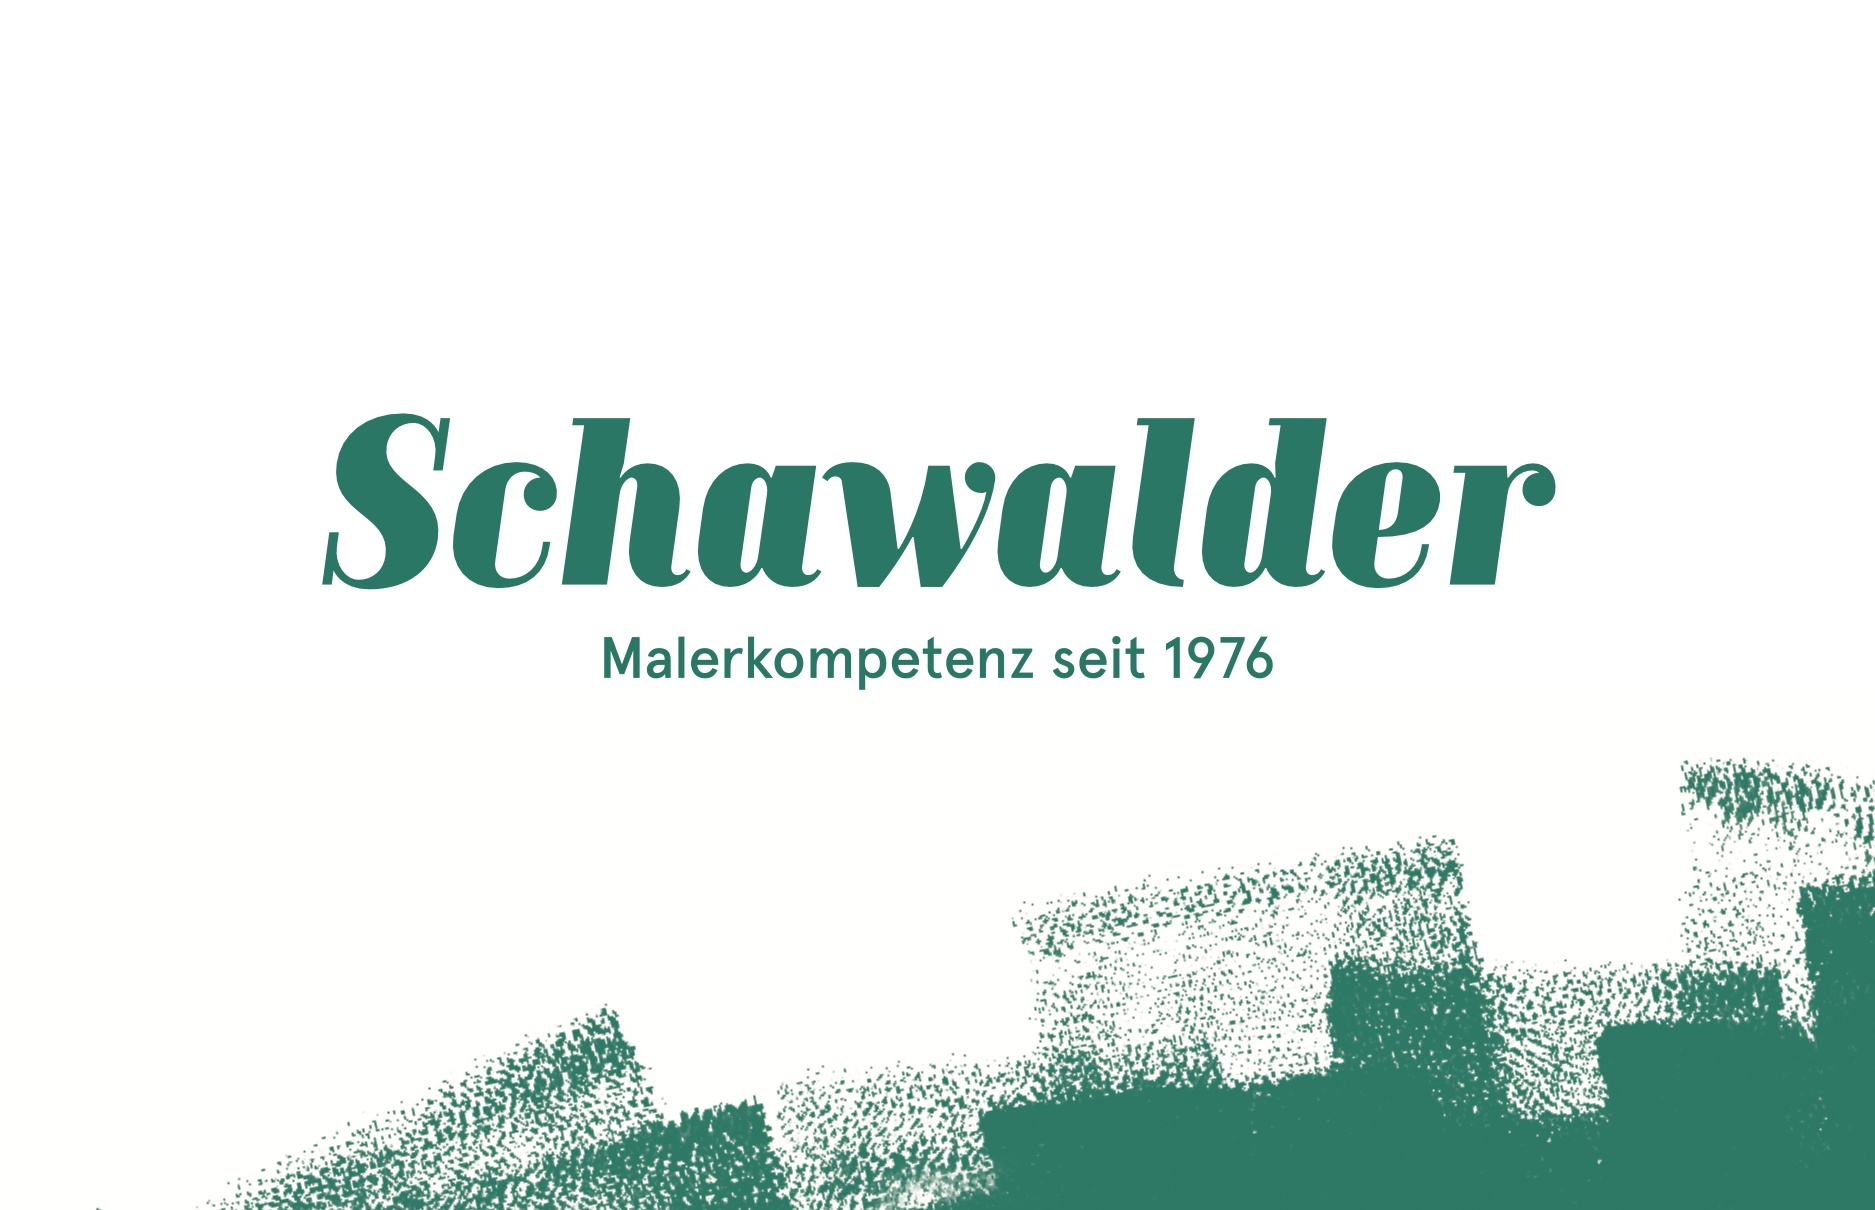 Schawalder Malergeschäft GmbH